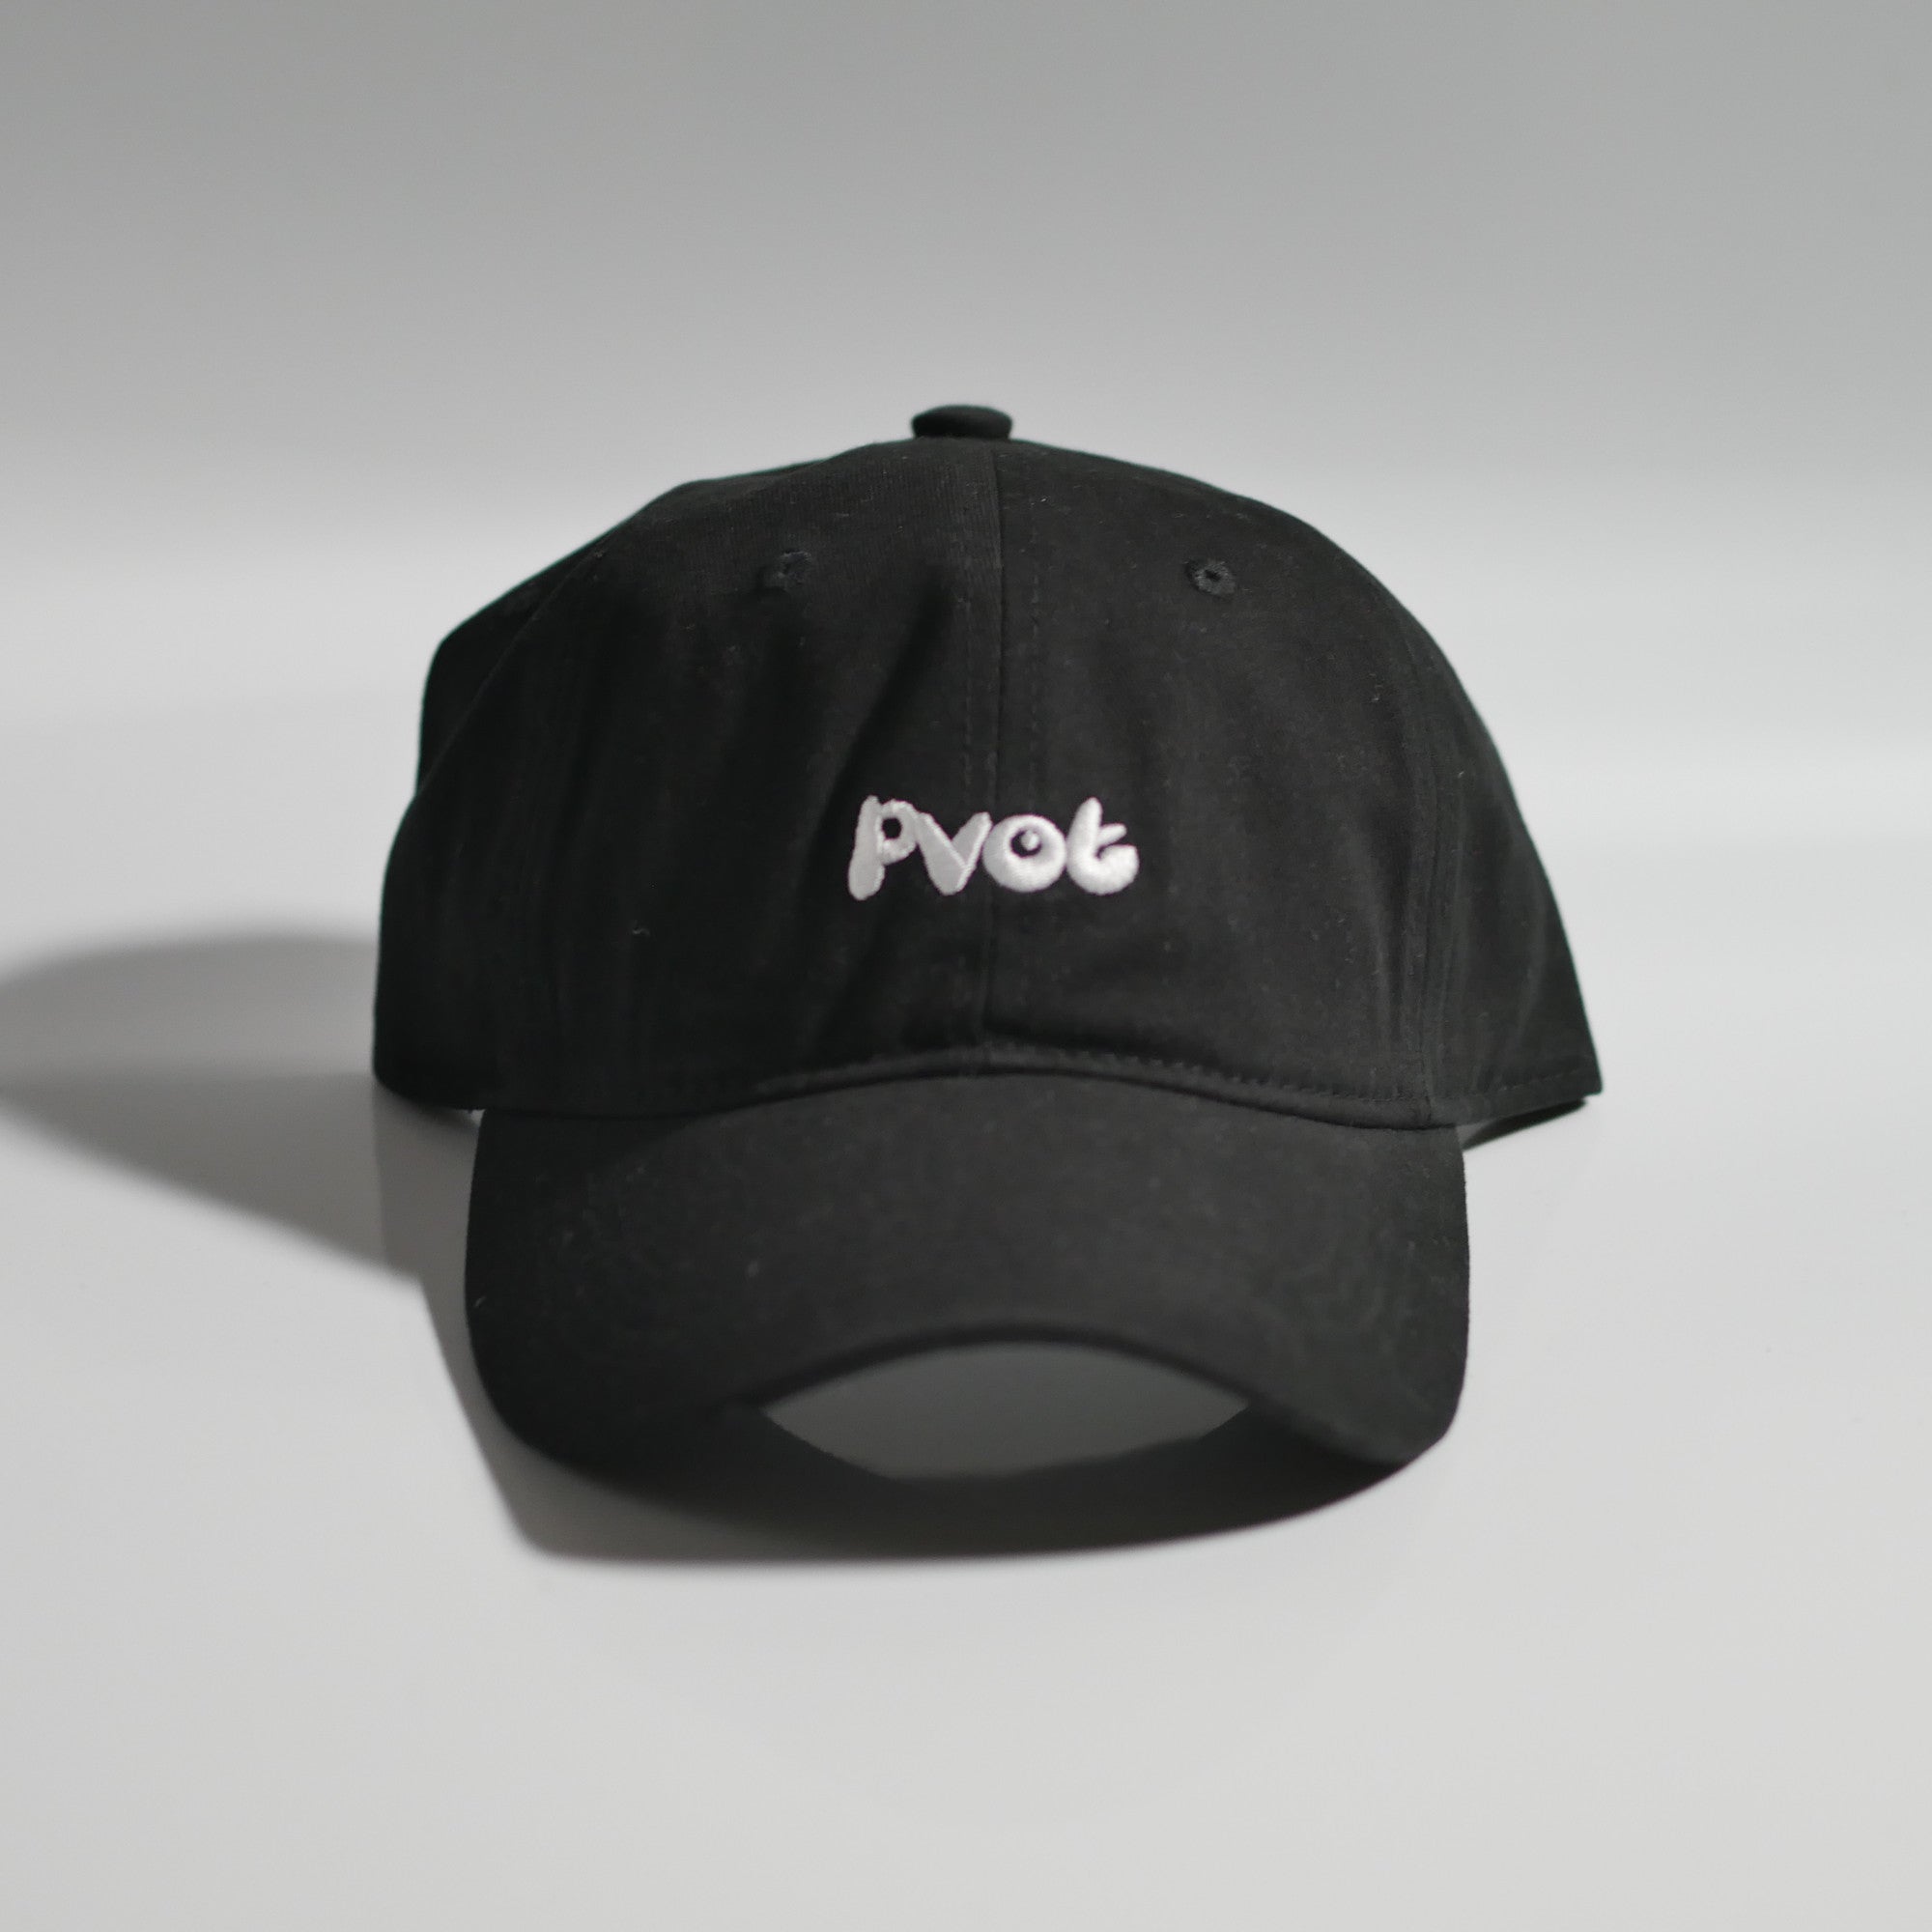 Pvot Logo Cap (Black)